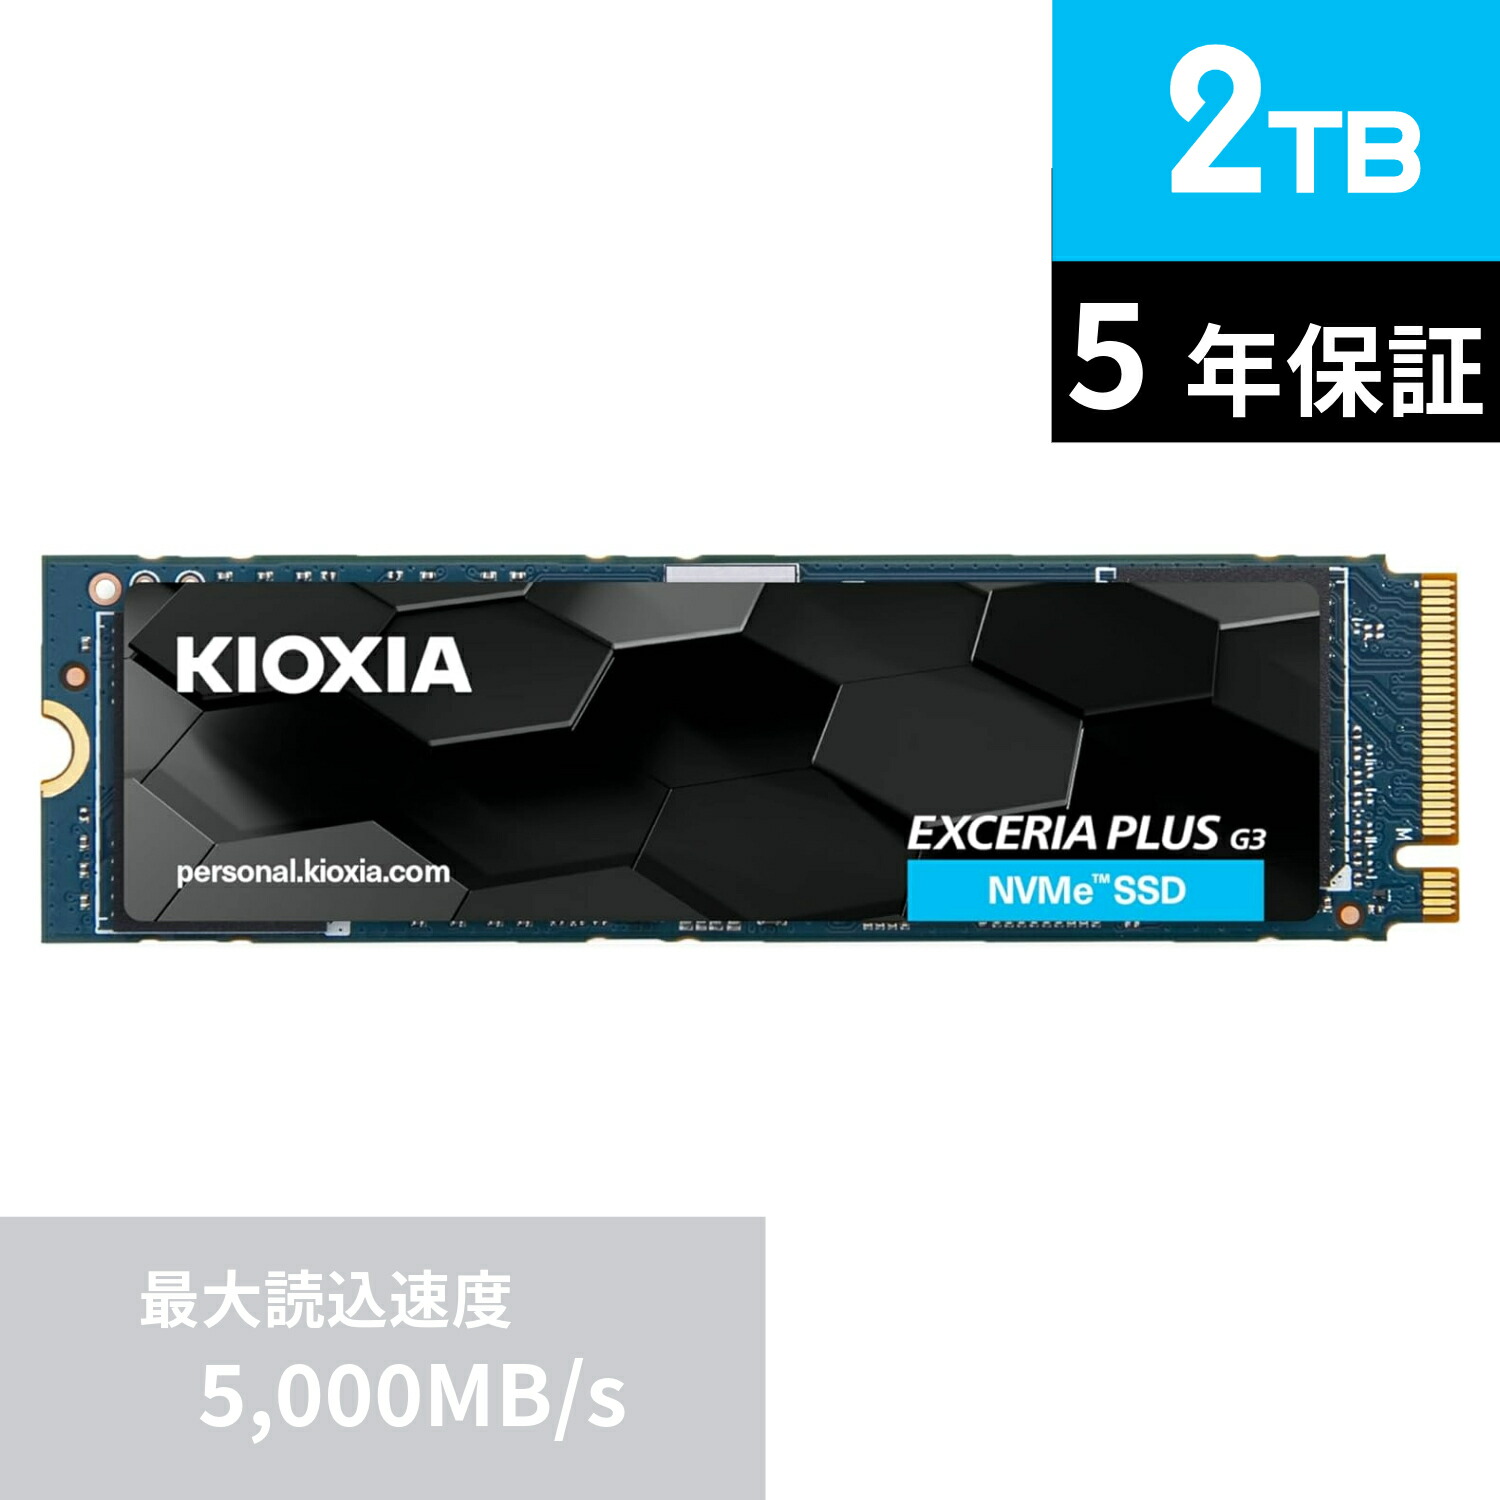 【楽天市場】【国内正規流通品】 キオクシア KIOXIA 内蔵 SSD 2TB 